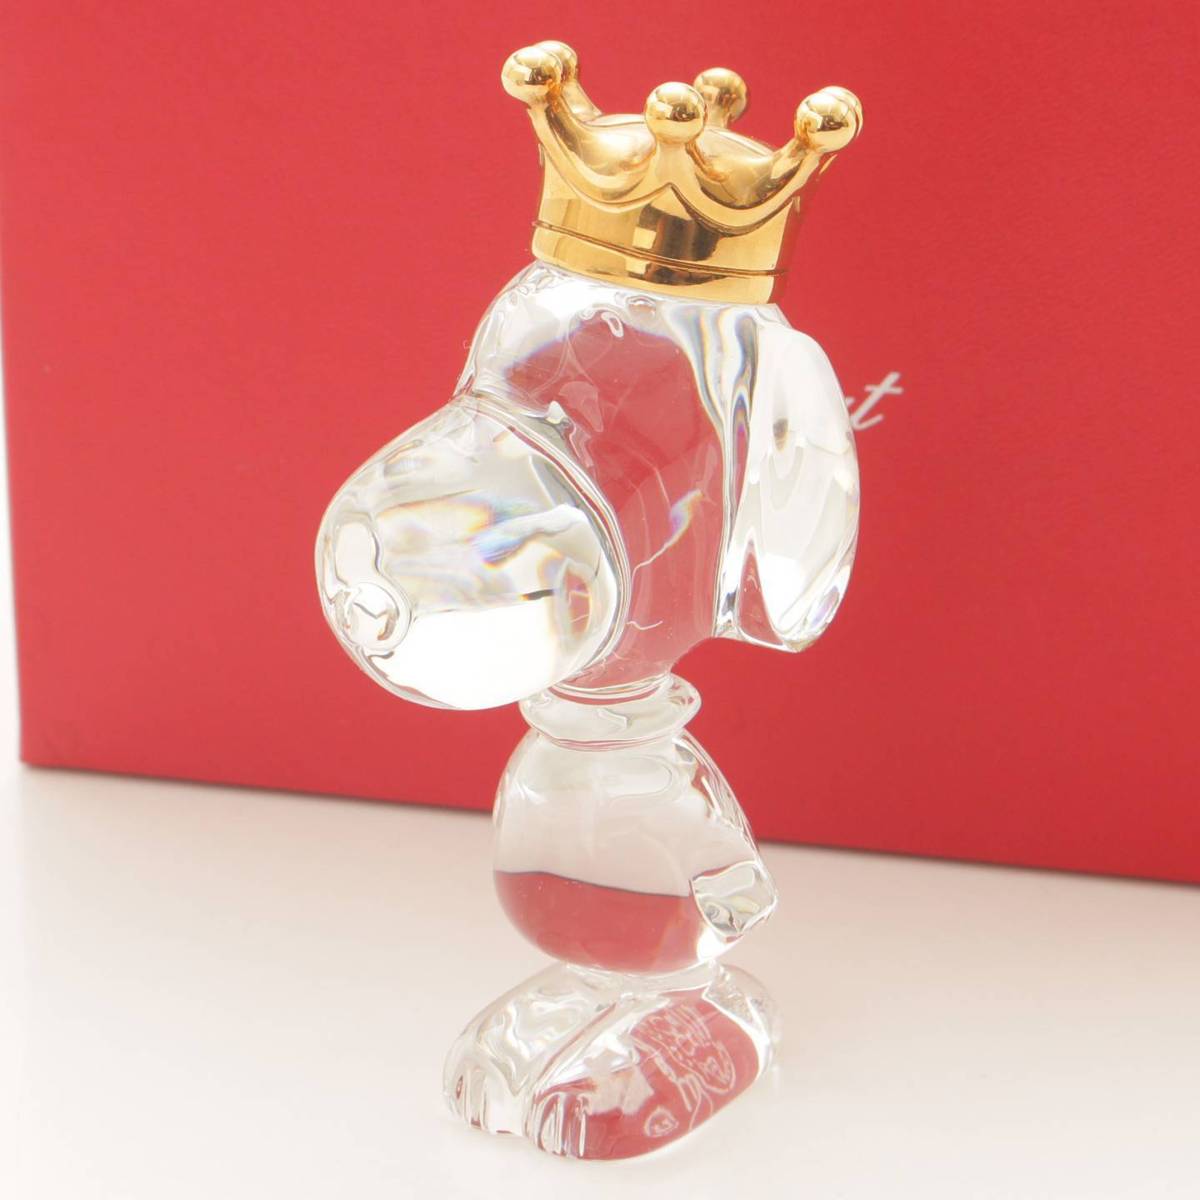 バカラ(BACCARAT) キング スヌーピー 王冠 クリスタル ガラス オブジェ ガラス工芸品 置物